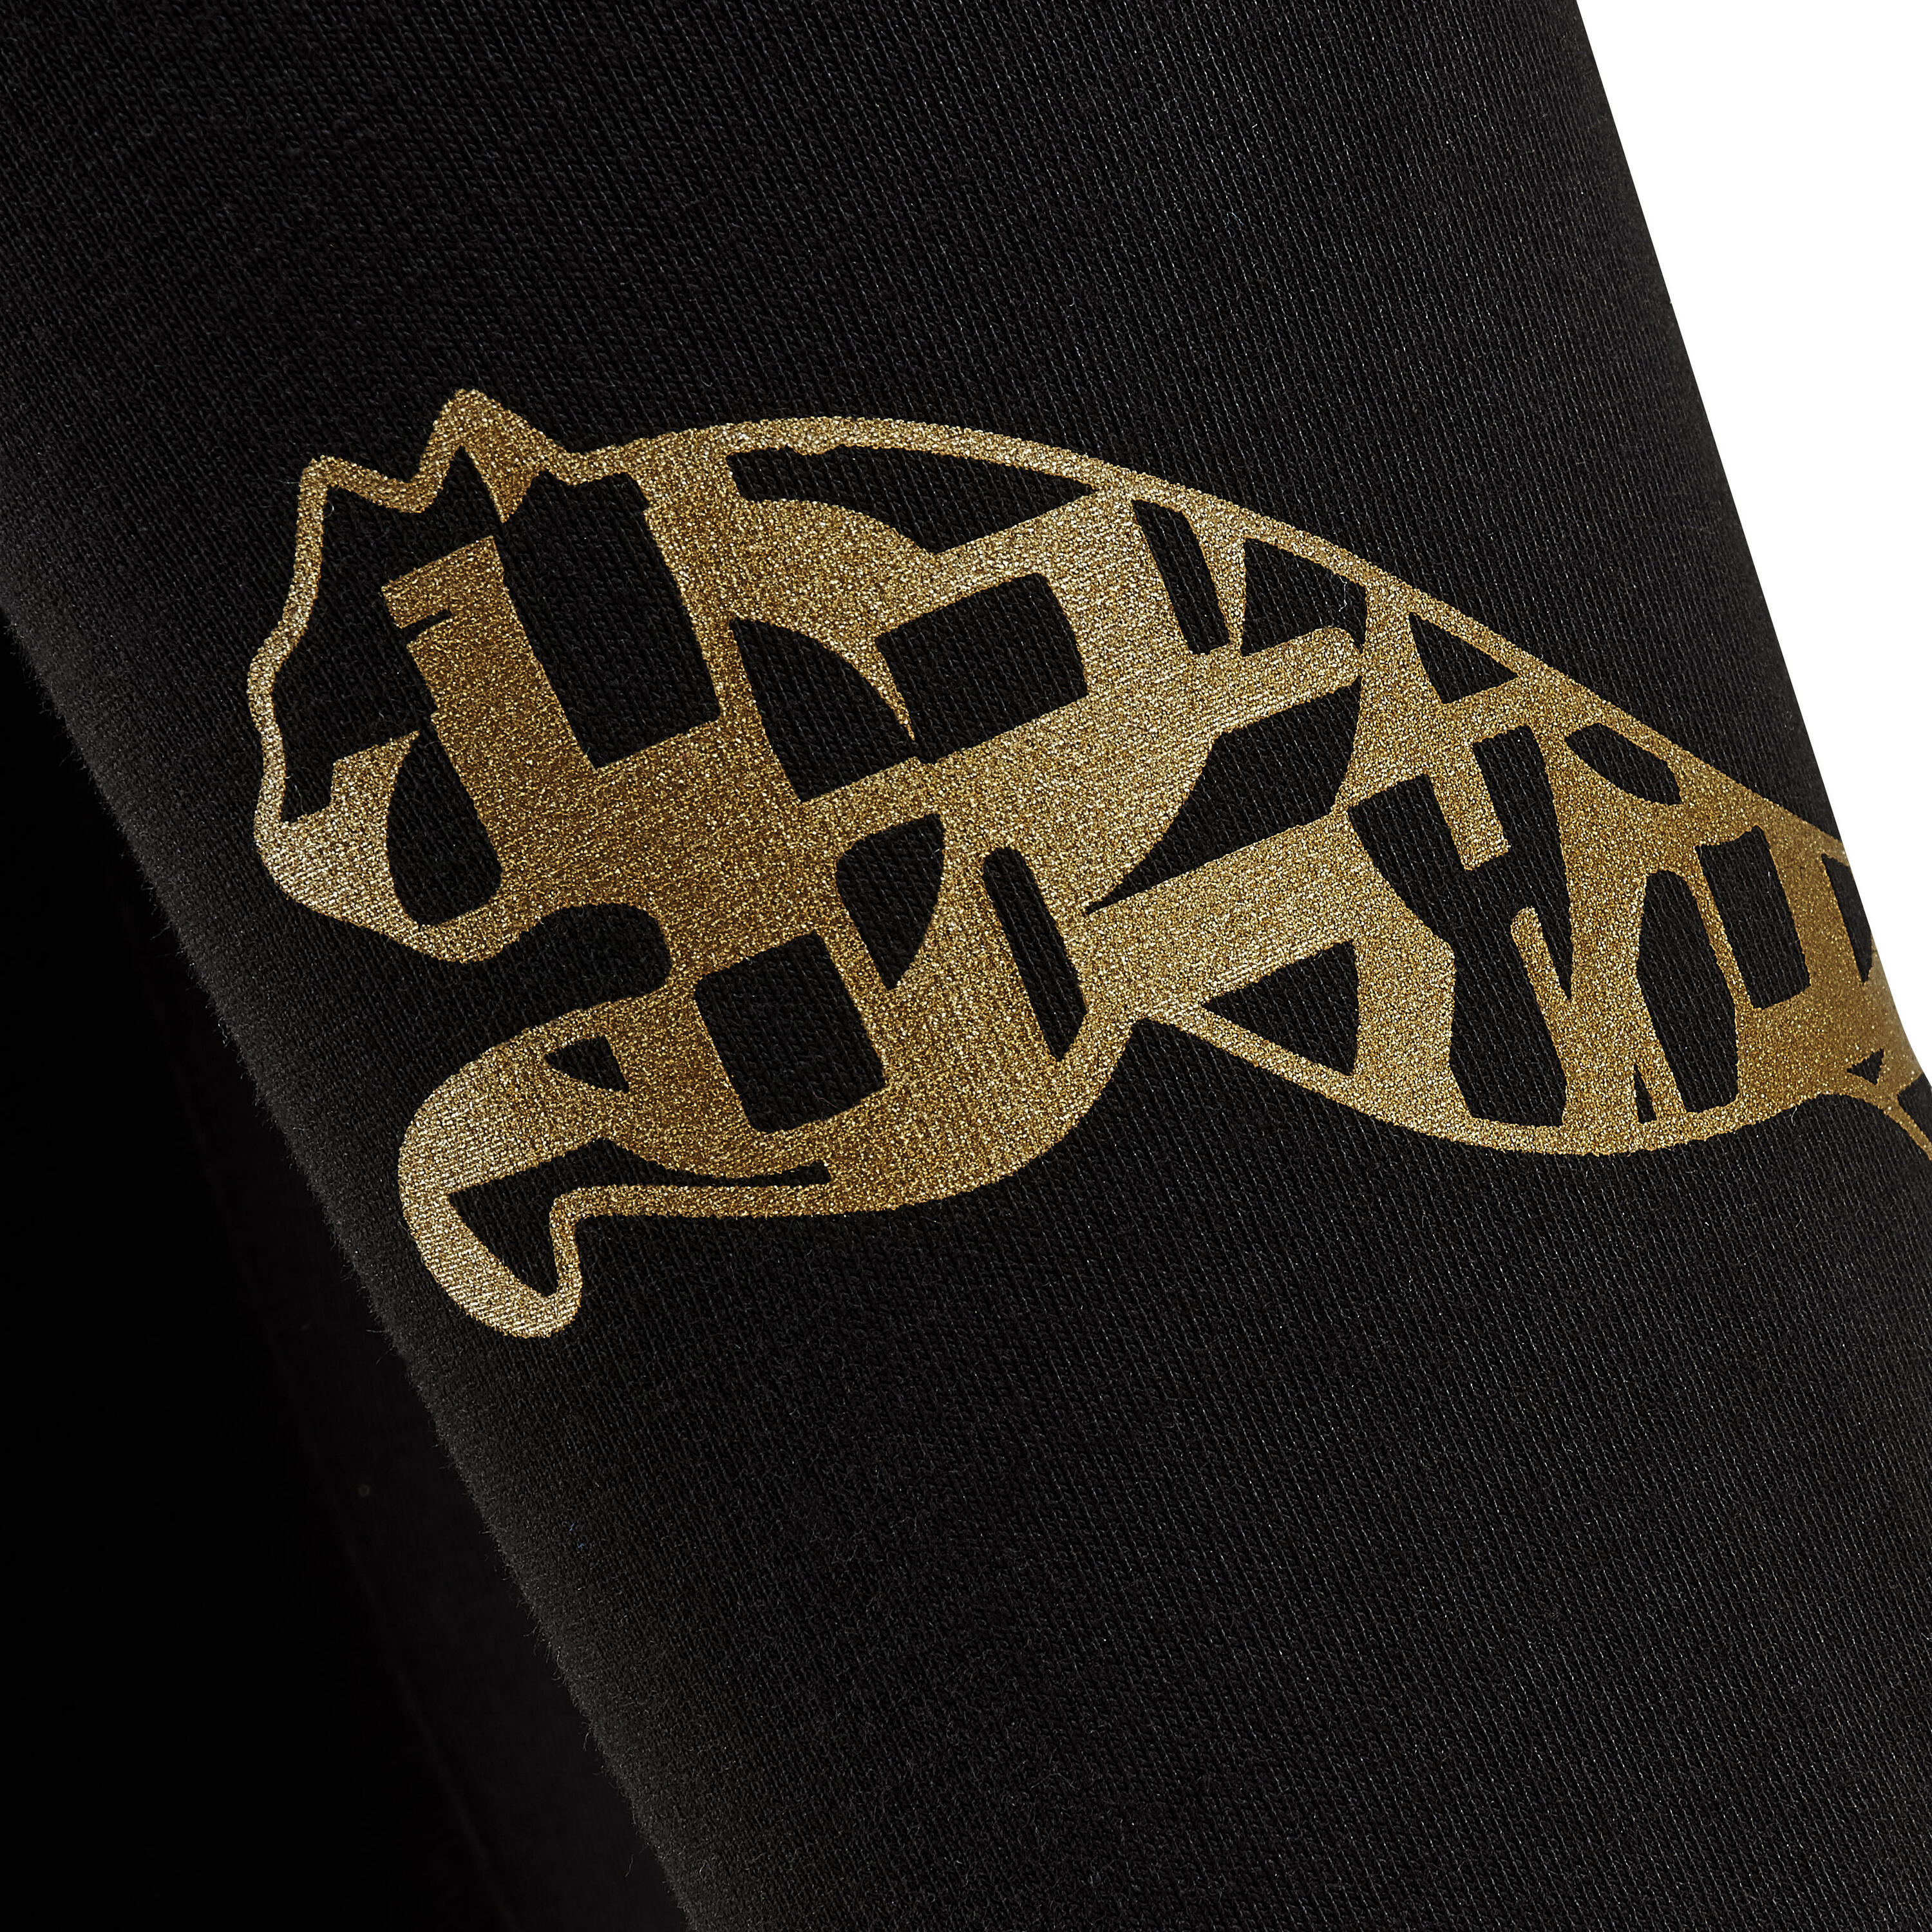 Cotton Fitness Leggings - Black/Gold Logo 5/7